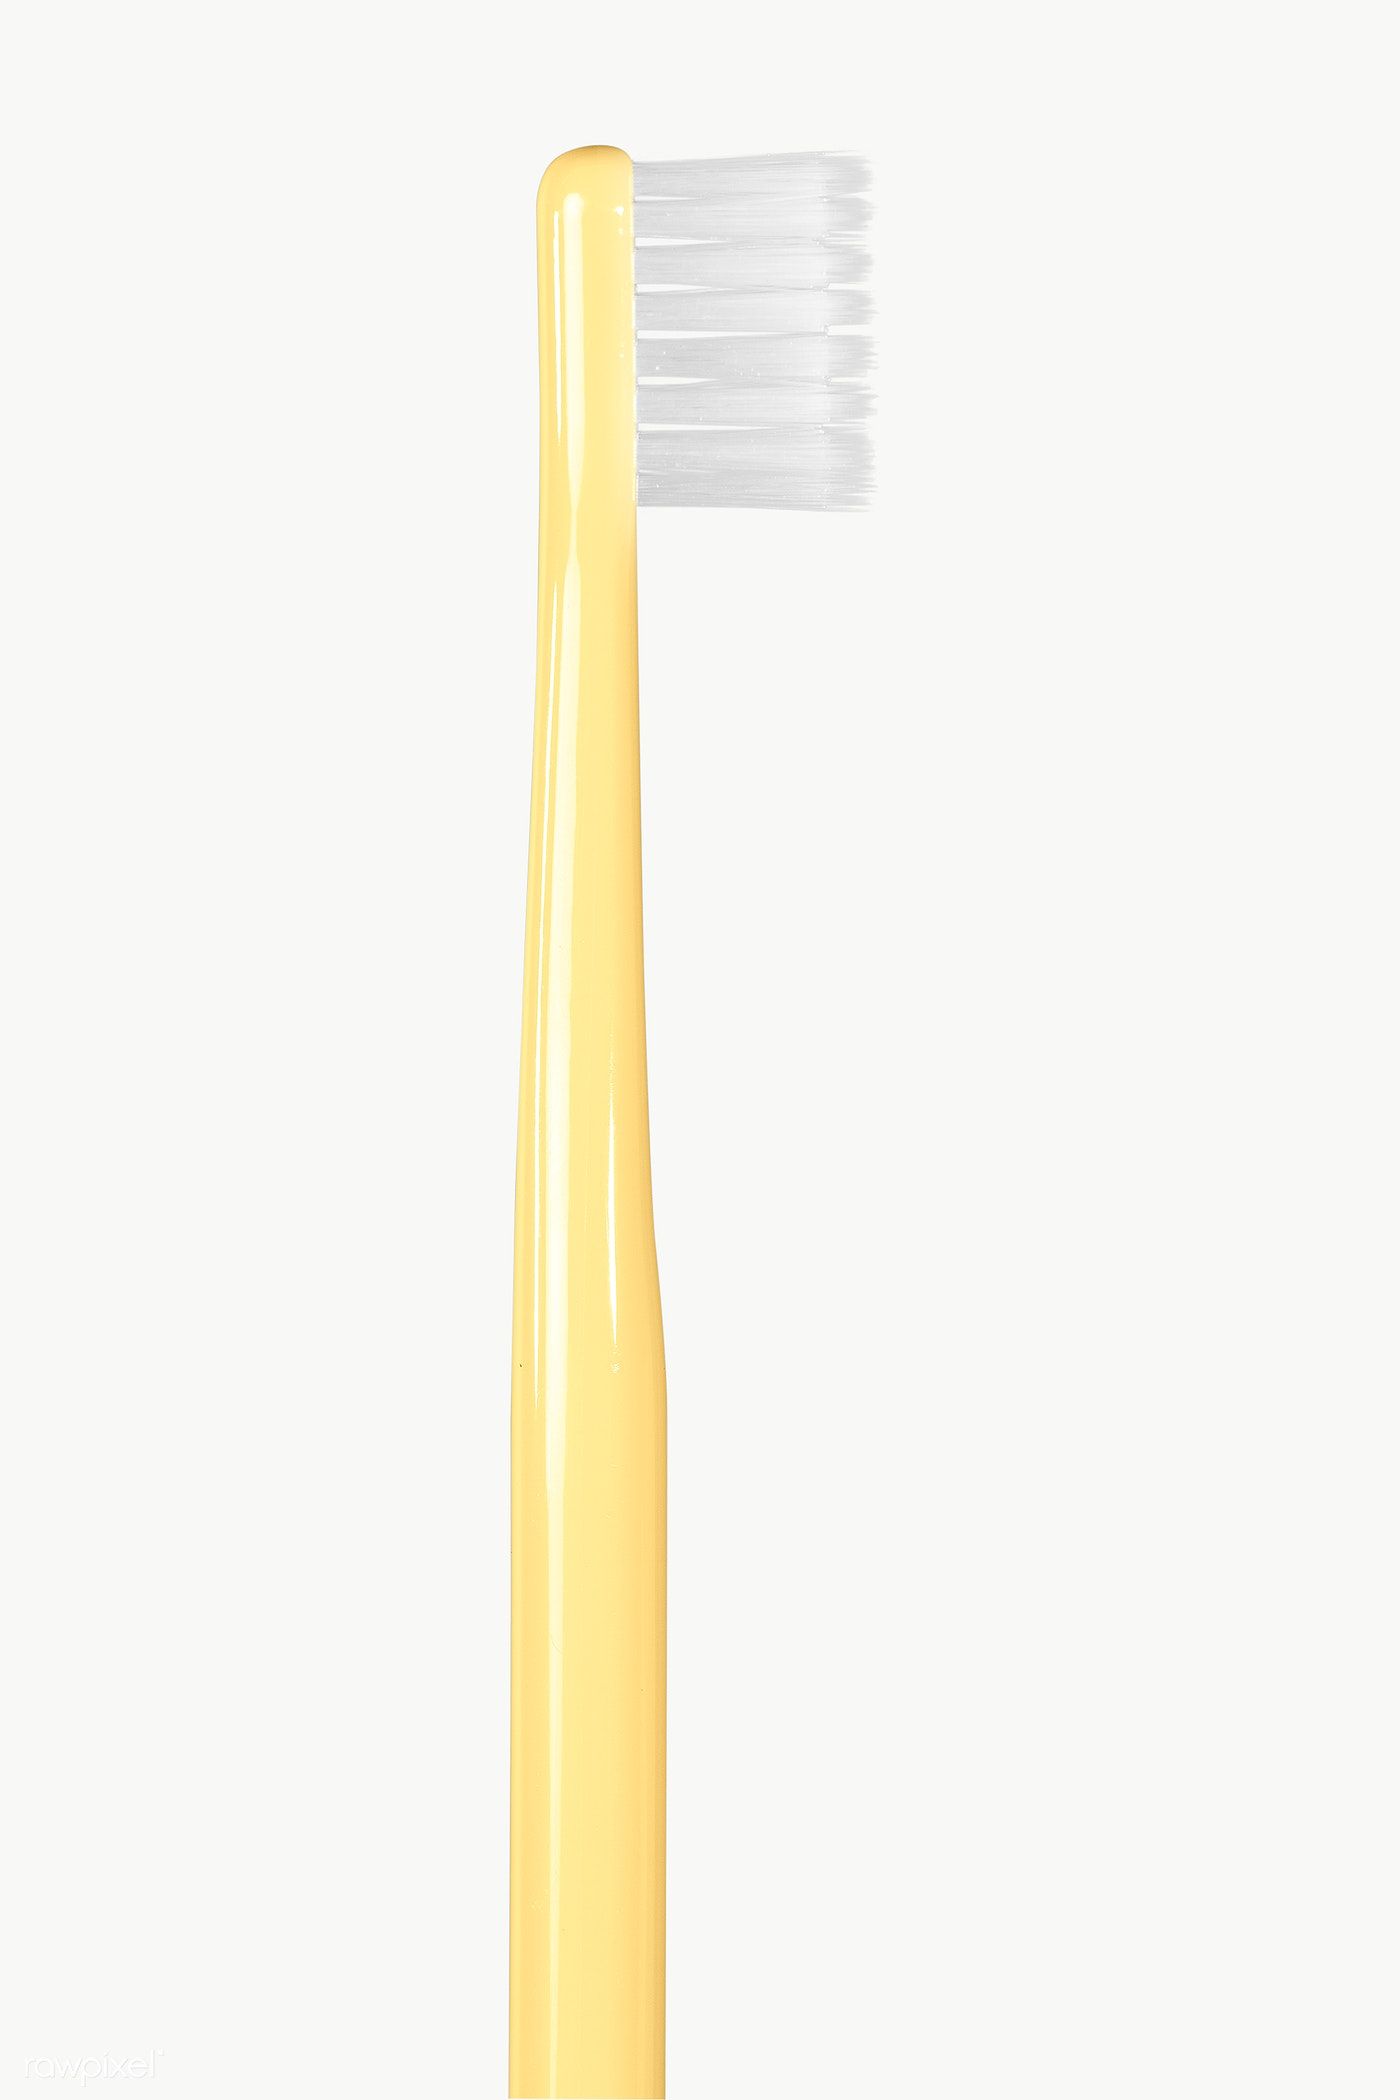 Detail Toothbrush No Background Nomer 35